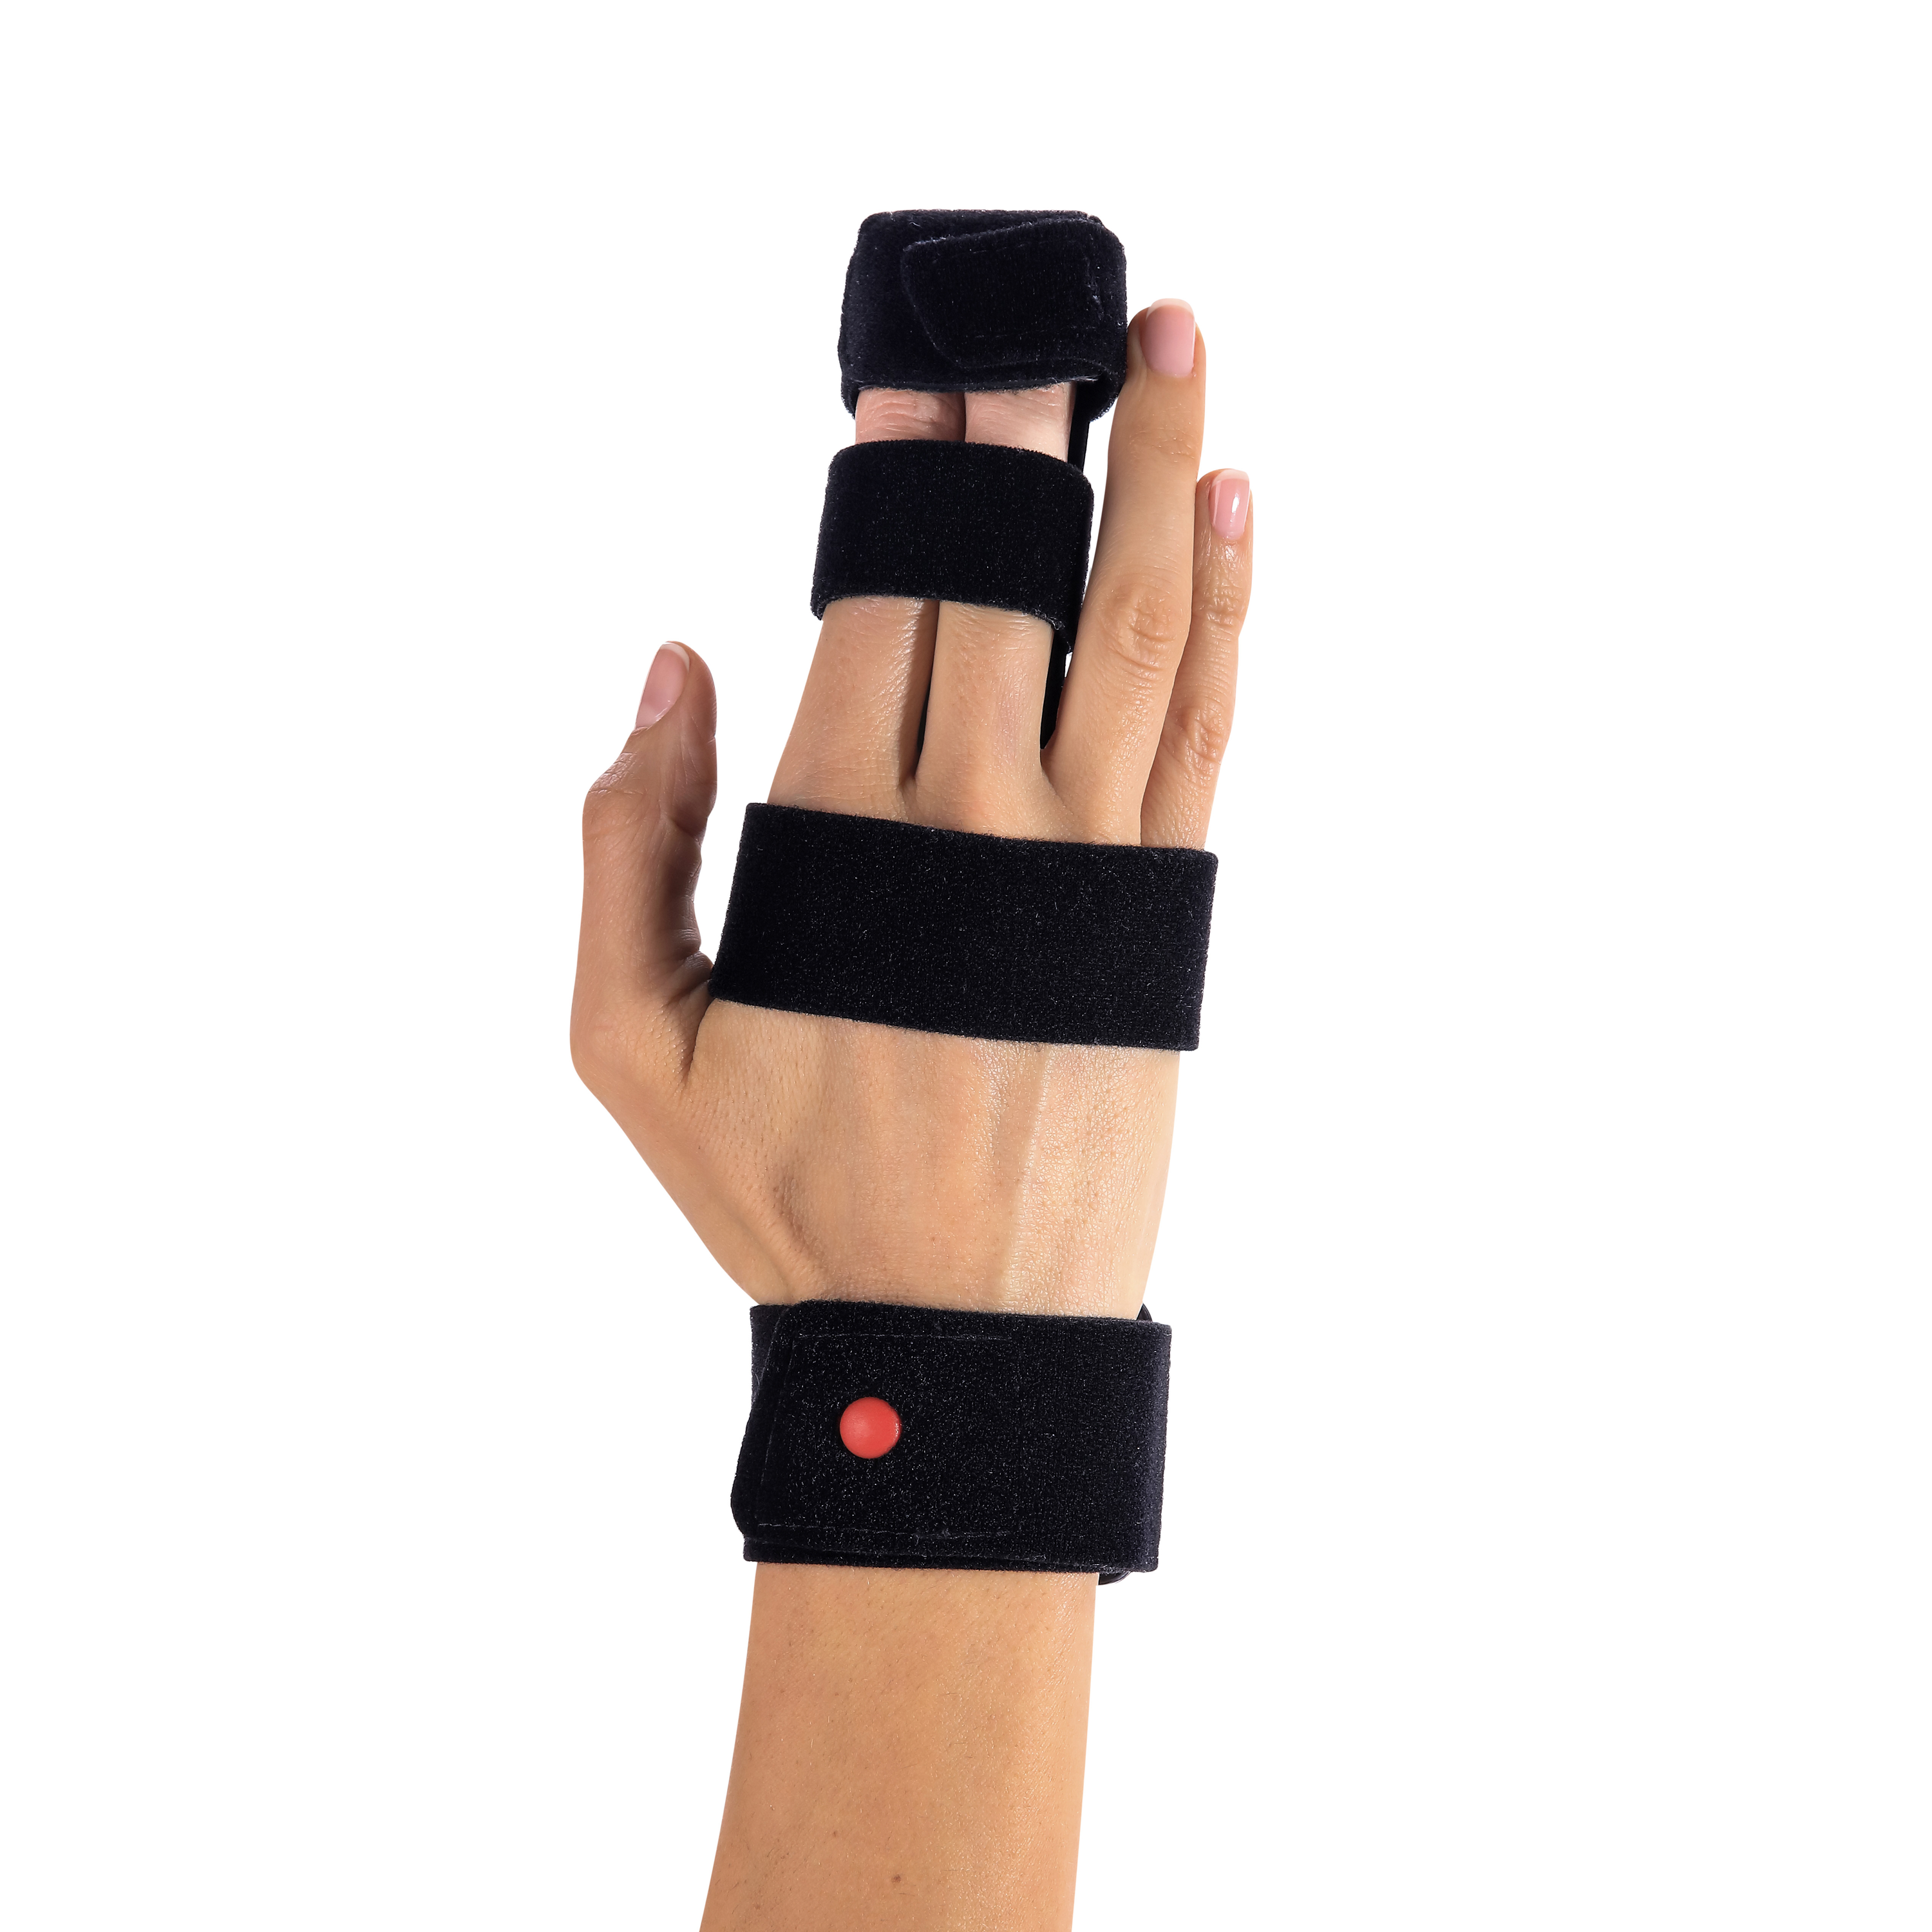 Produktbild DONJOY® DigiForm™, Fingerorthese zur Immobilisierung von 1 bis 2 Fingern